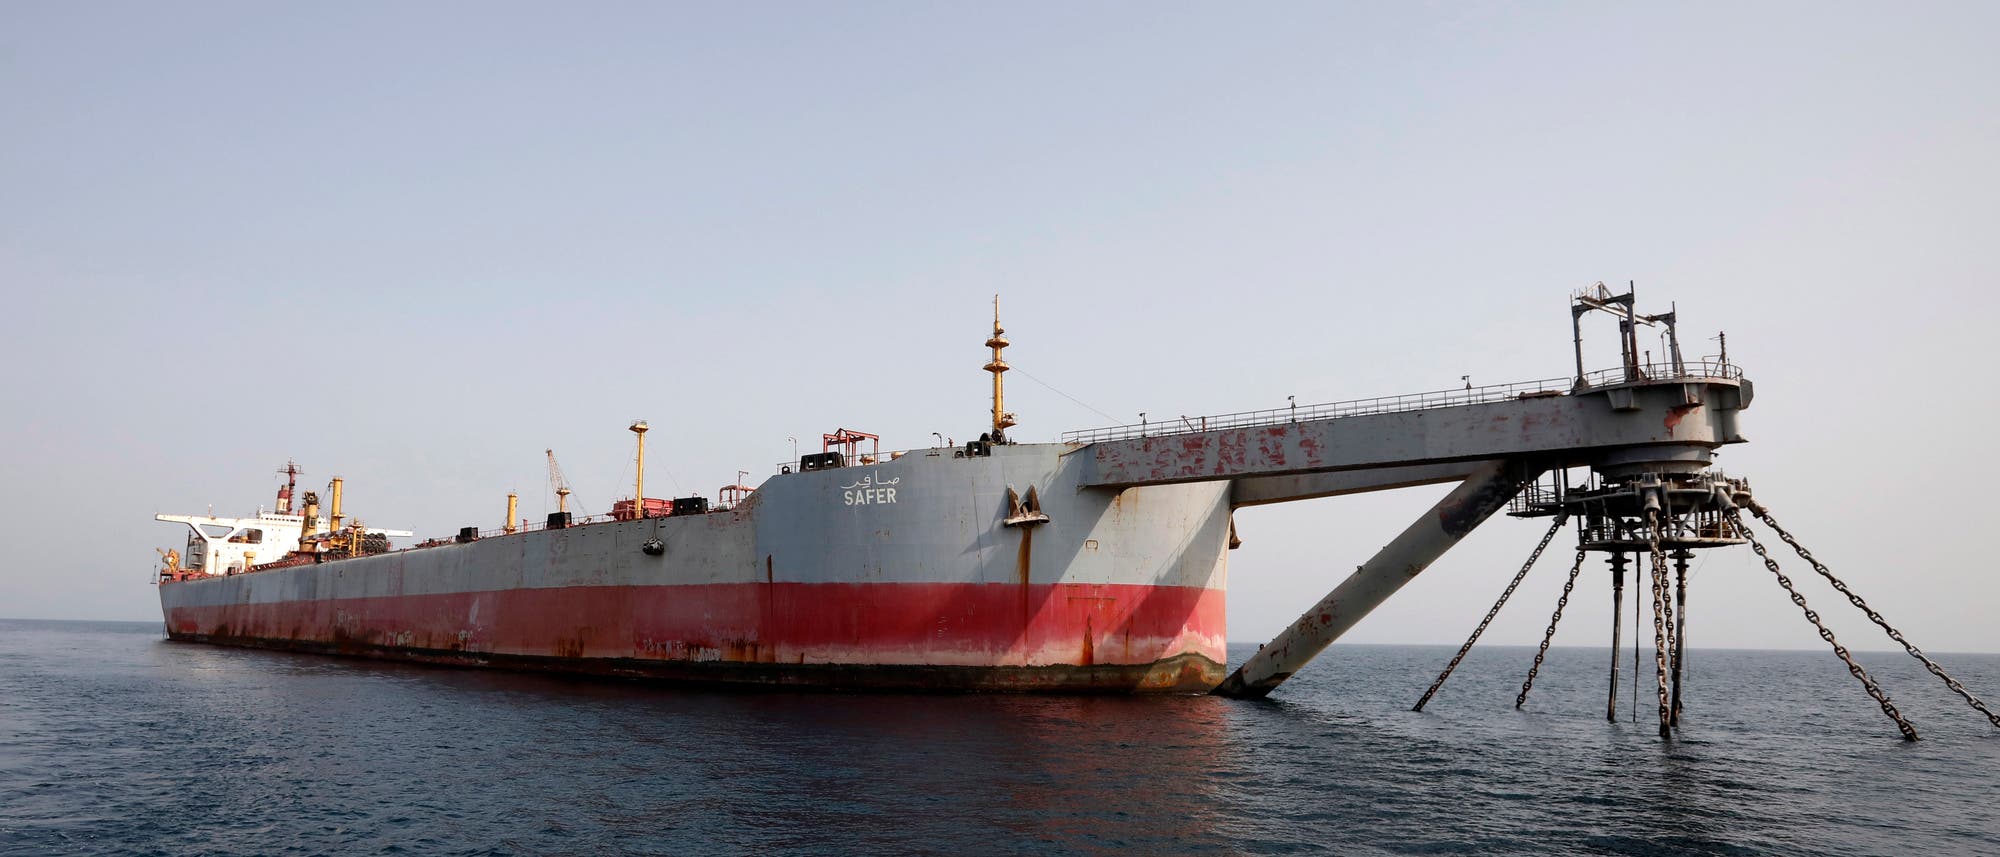 Bei der »Safer« handelt es sich um ein Lager- und Umschlagsschiff für Erdöl. Es liegt seit Jahren vor der Küste Jemens und zerfällt.